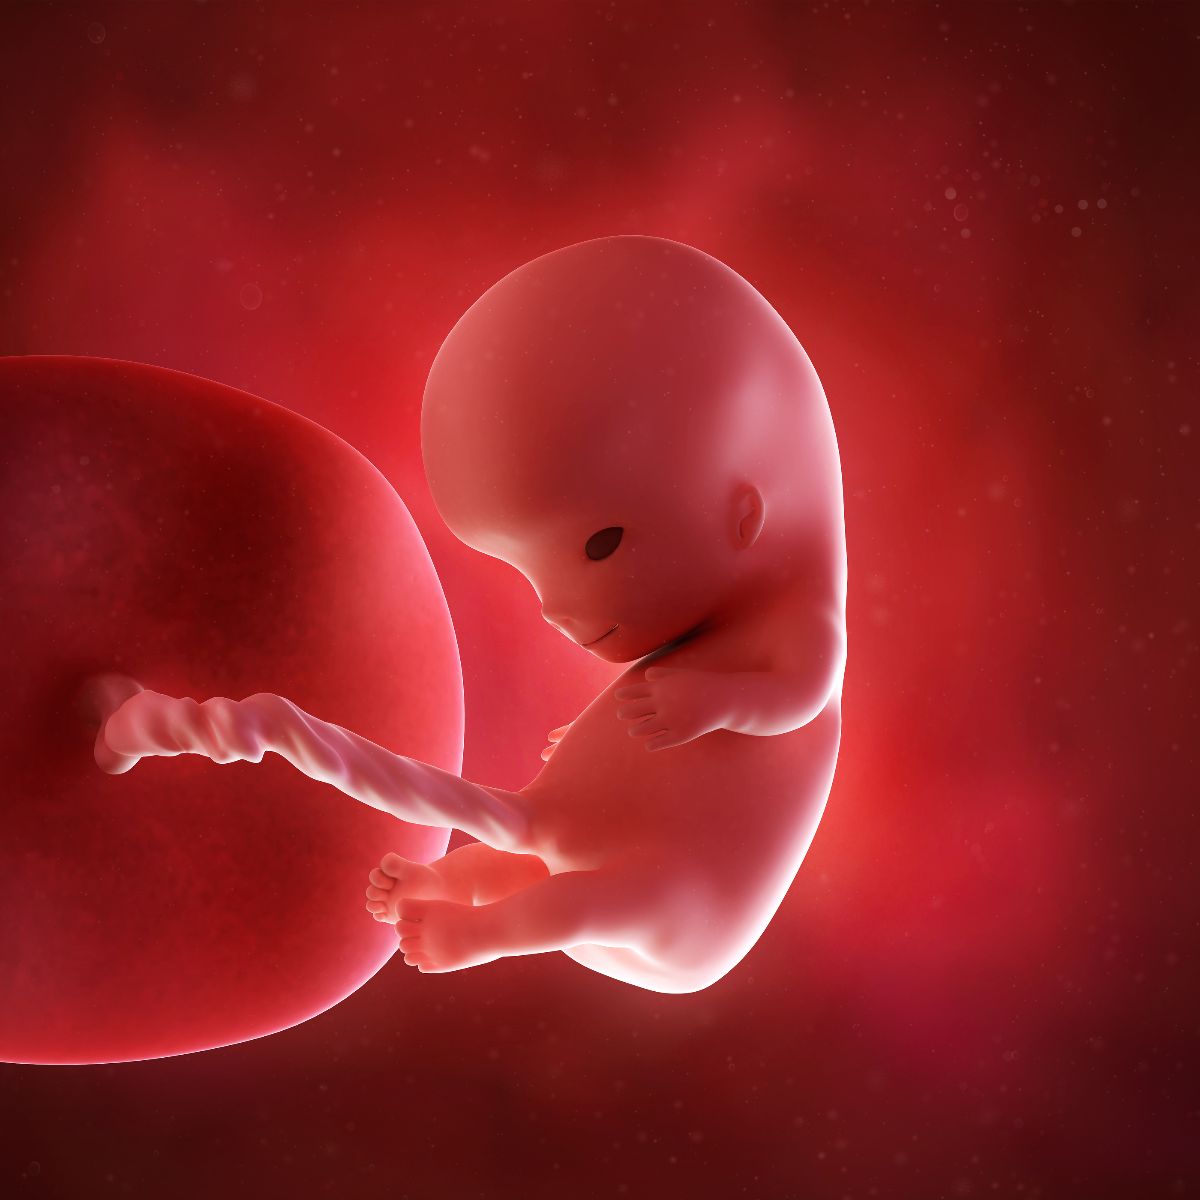 10 Semanas de embarazo: Tu bebé comienza a moverse - Facemama.com - Alas 10 Semanas De Embarazo Ya Se Mueve El Bebe